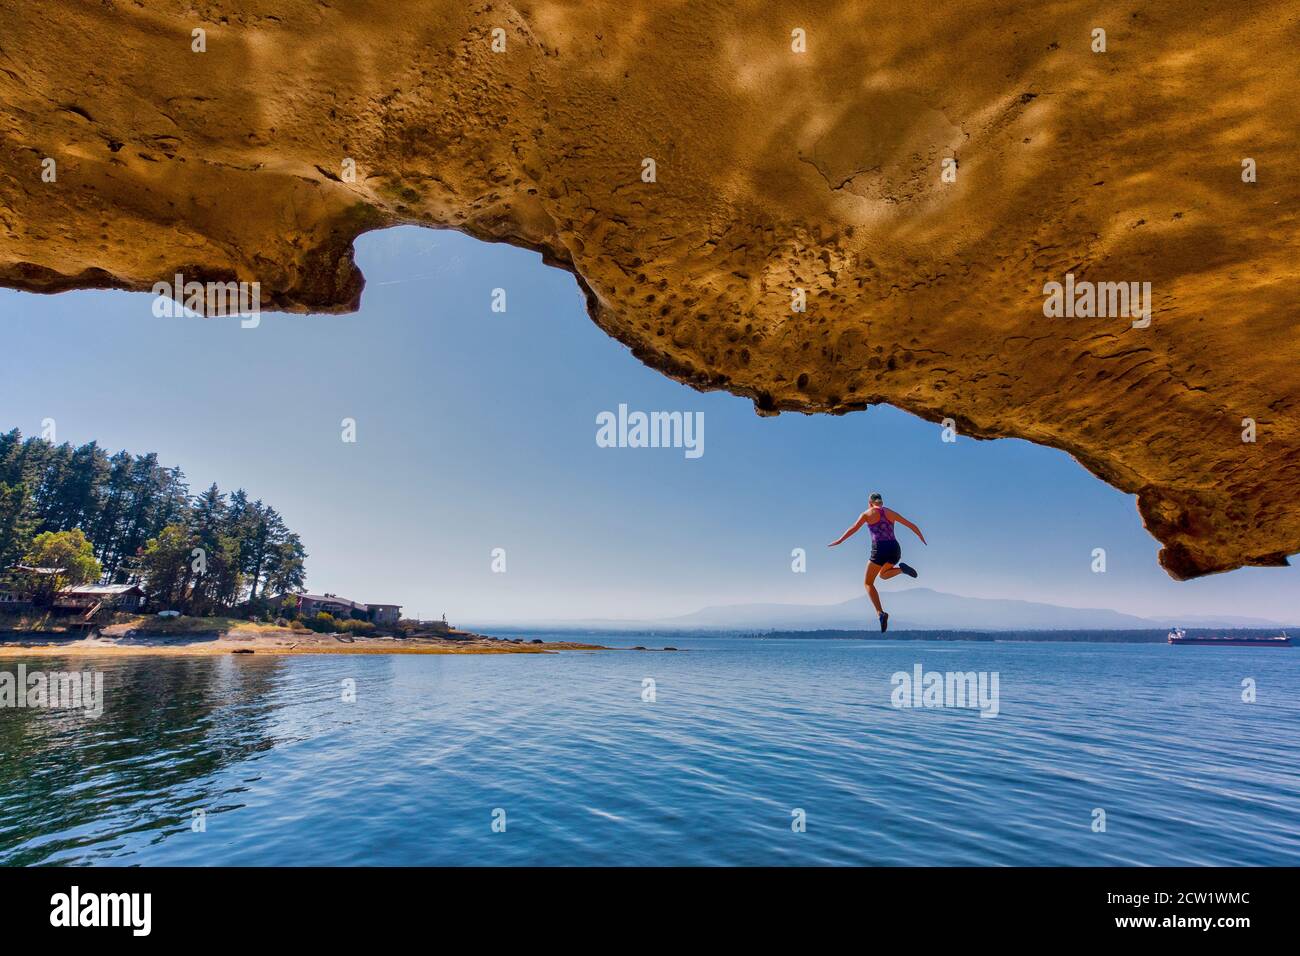 Un giovane ponticello della scogliera galleggia sospeso nell'aria prima di tuffarsi nell'oceano sull'isola di Gabriola, Columbia Britannica, Canada. Foto Stock